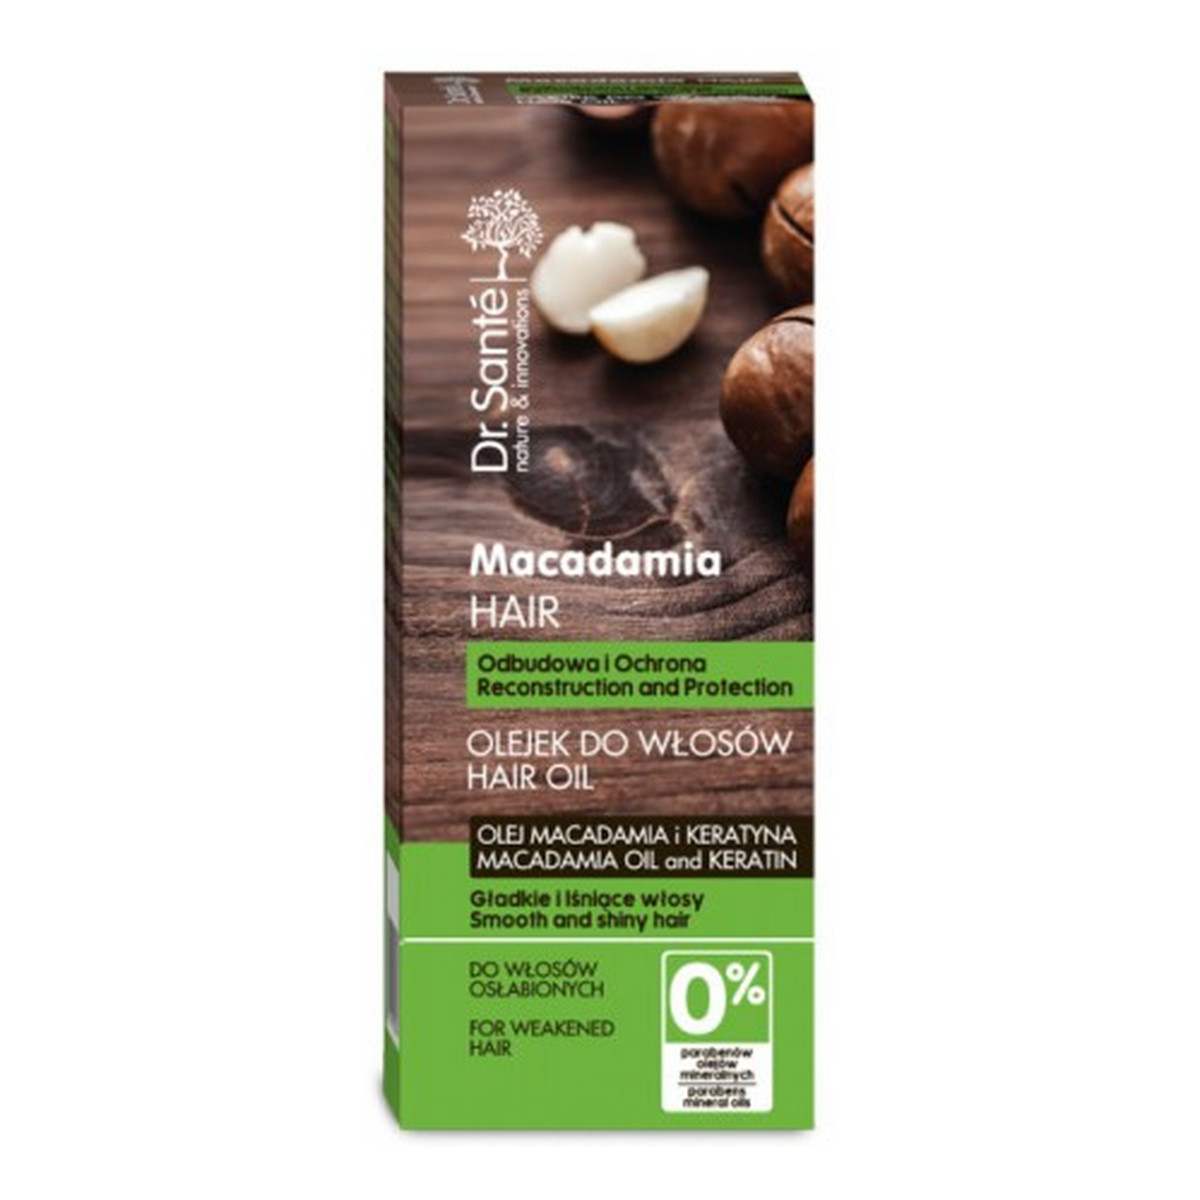 Dr. Sante Macadamia Hair Olejek Do Włosów Odbudowujący Ochronny z Olejem Macadamia i Keratyną 50ml